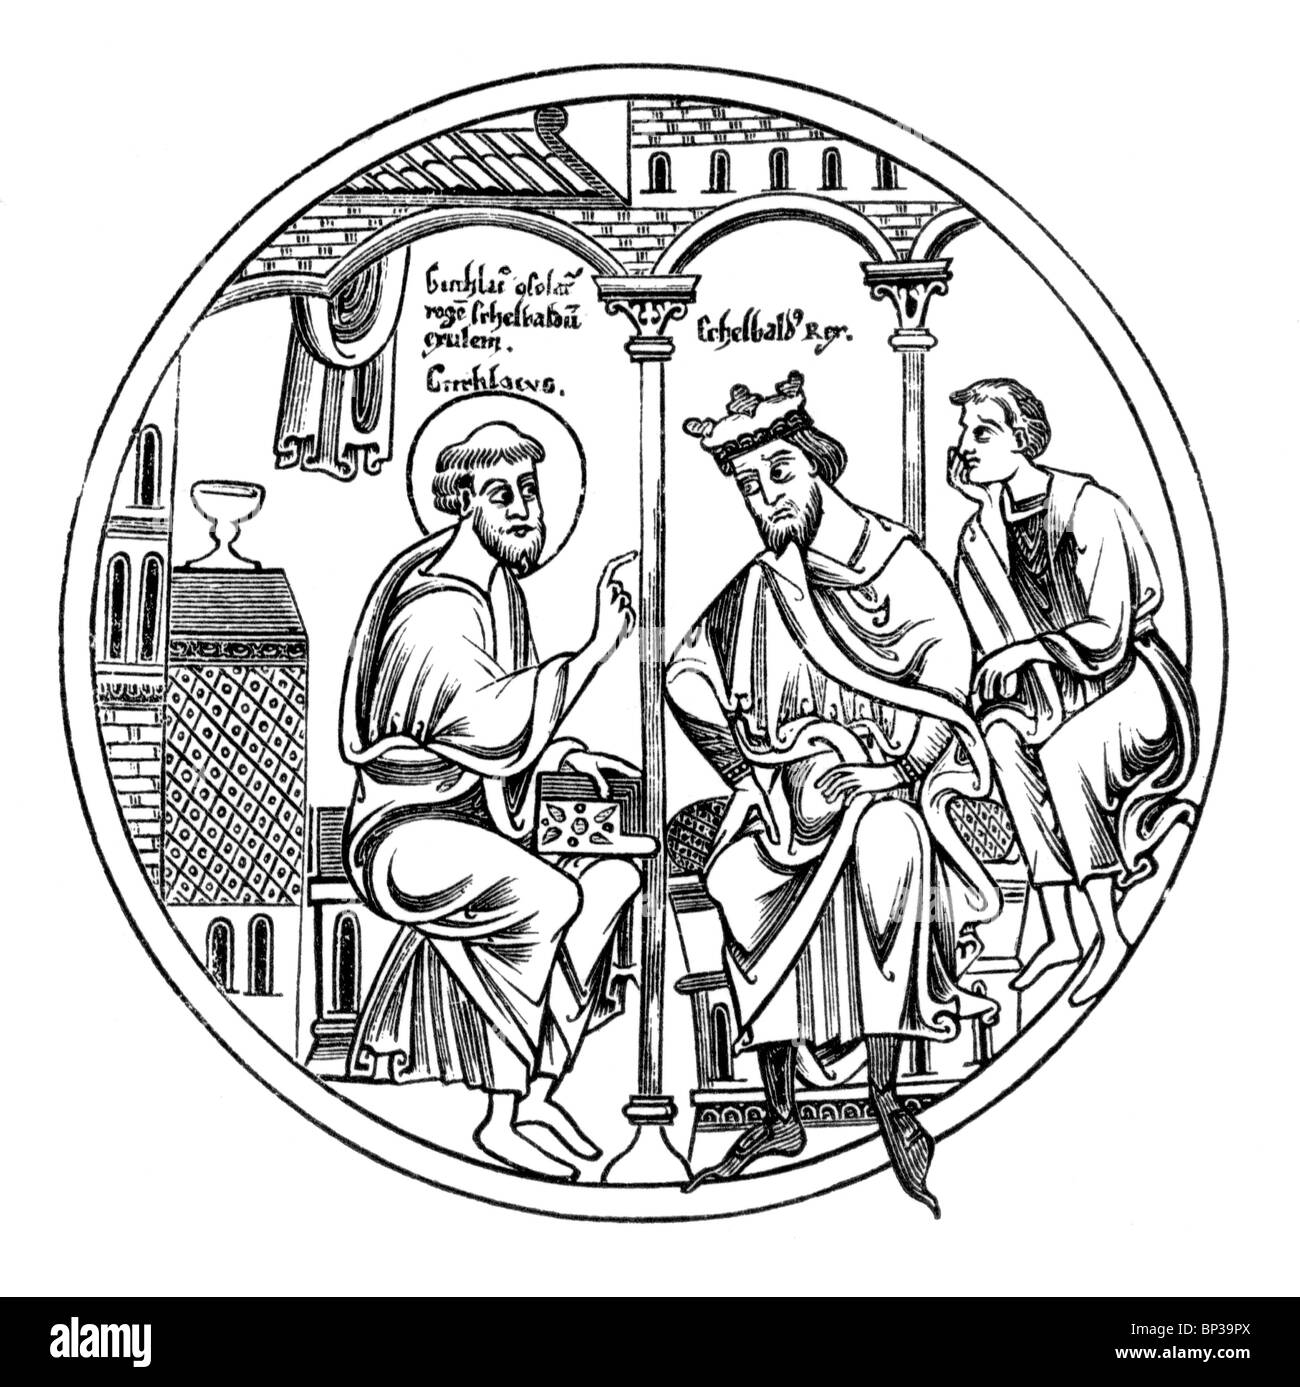 Bianco e Nero illustrazione; scena dal rotolo Guthlac; xii secolo; la vita di Guthlac; re Aethelbald visitando Guthlac Foto Stock